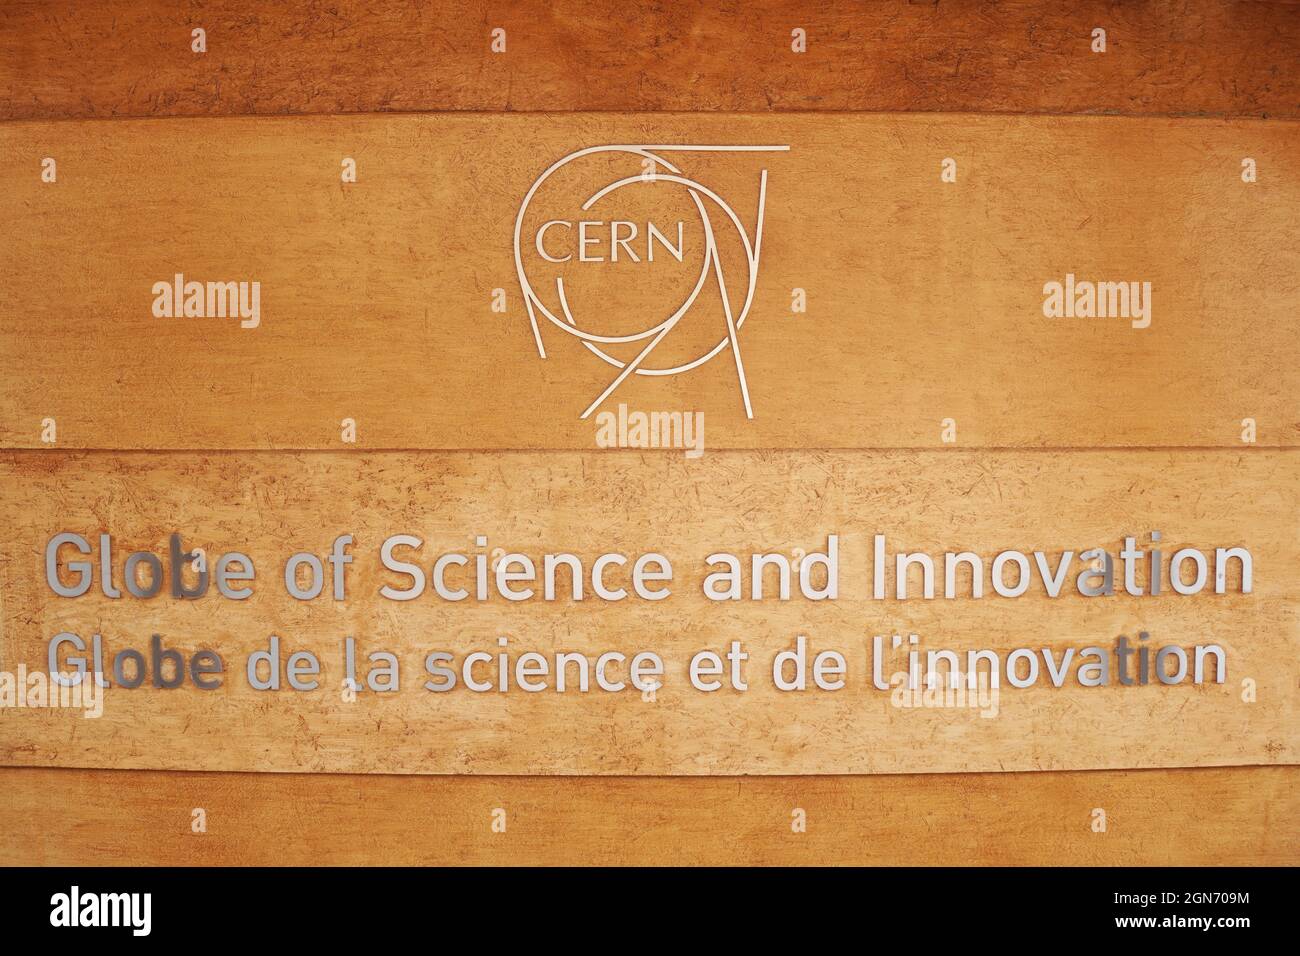 Globe of Science and Innovation al CERN, l'Organizzazione europea per la ricerca nucleare. Centro visitatori, museo e mostre. Foto Stock